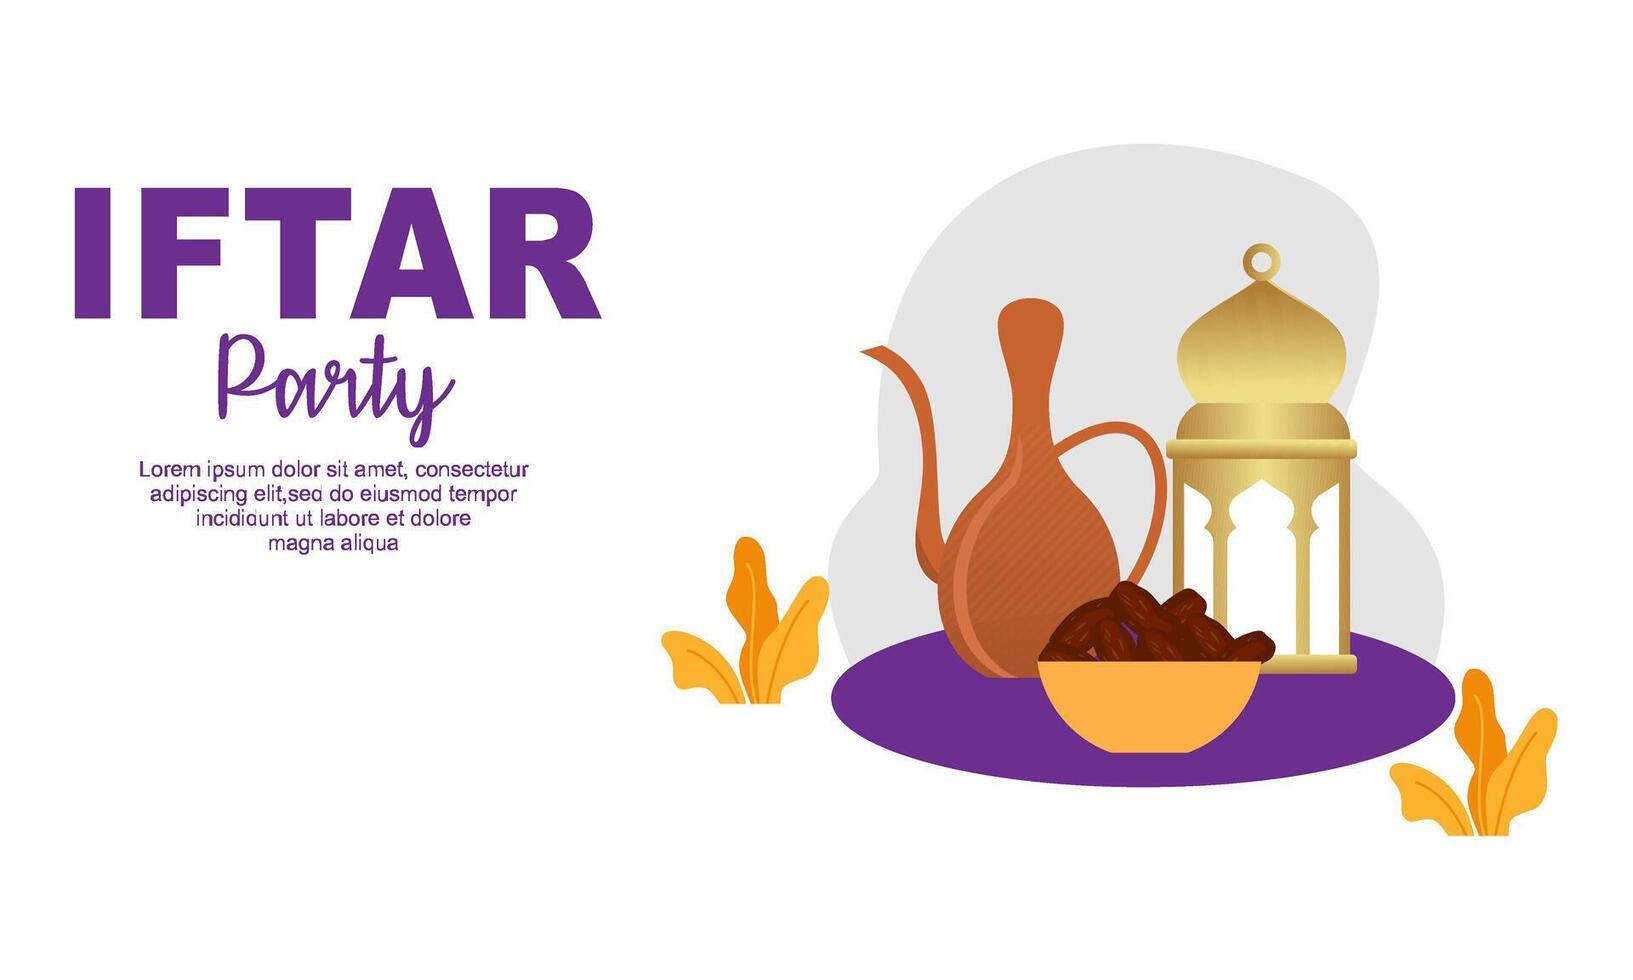 iftar festa celebração conceito folheto vetor ilustração